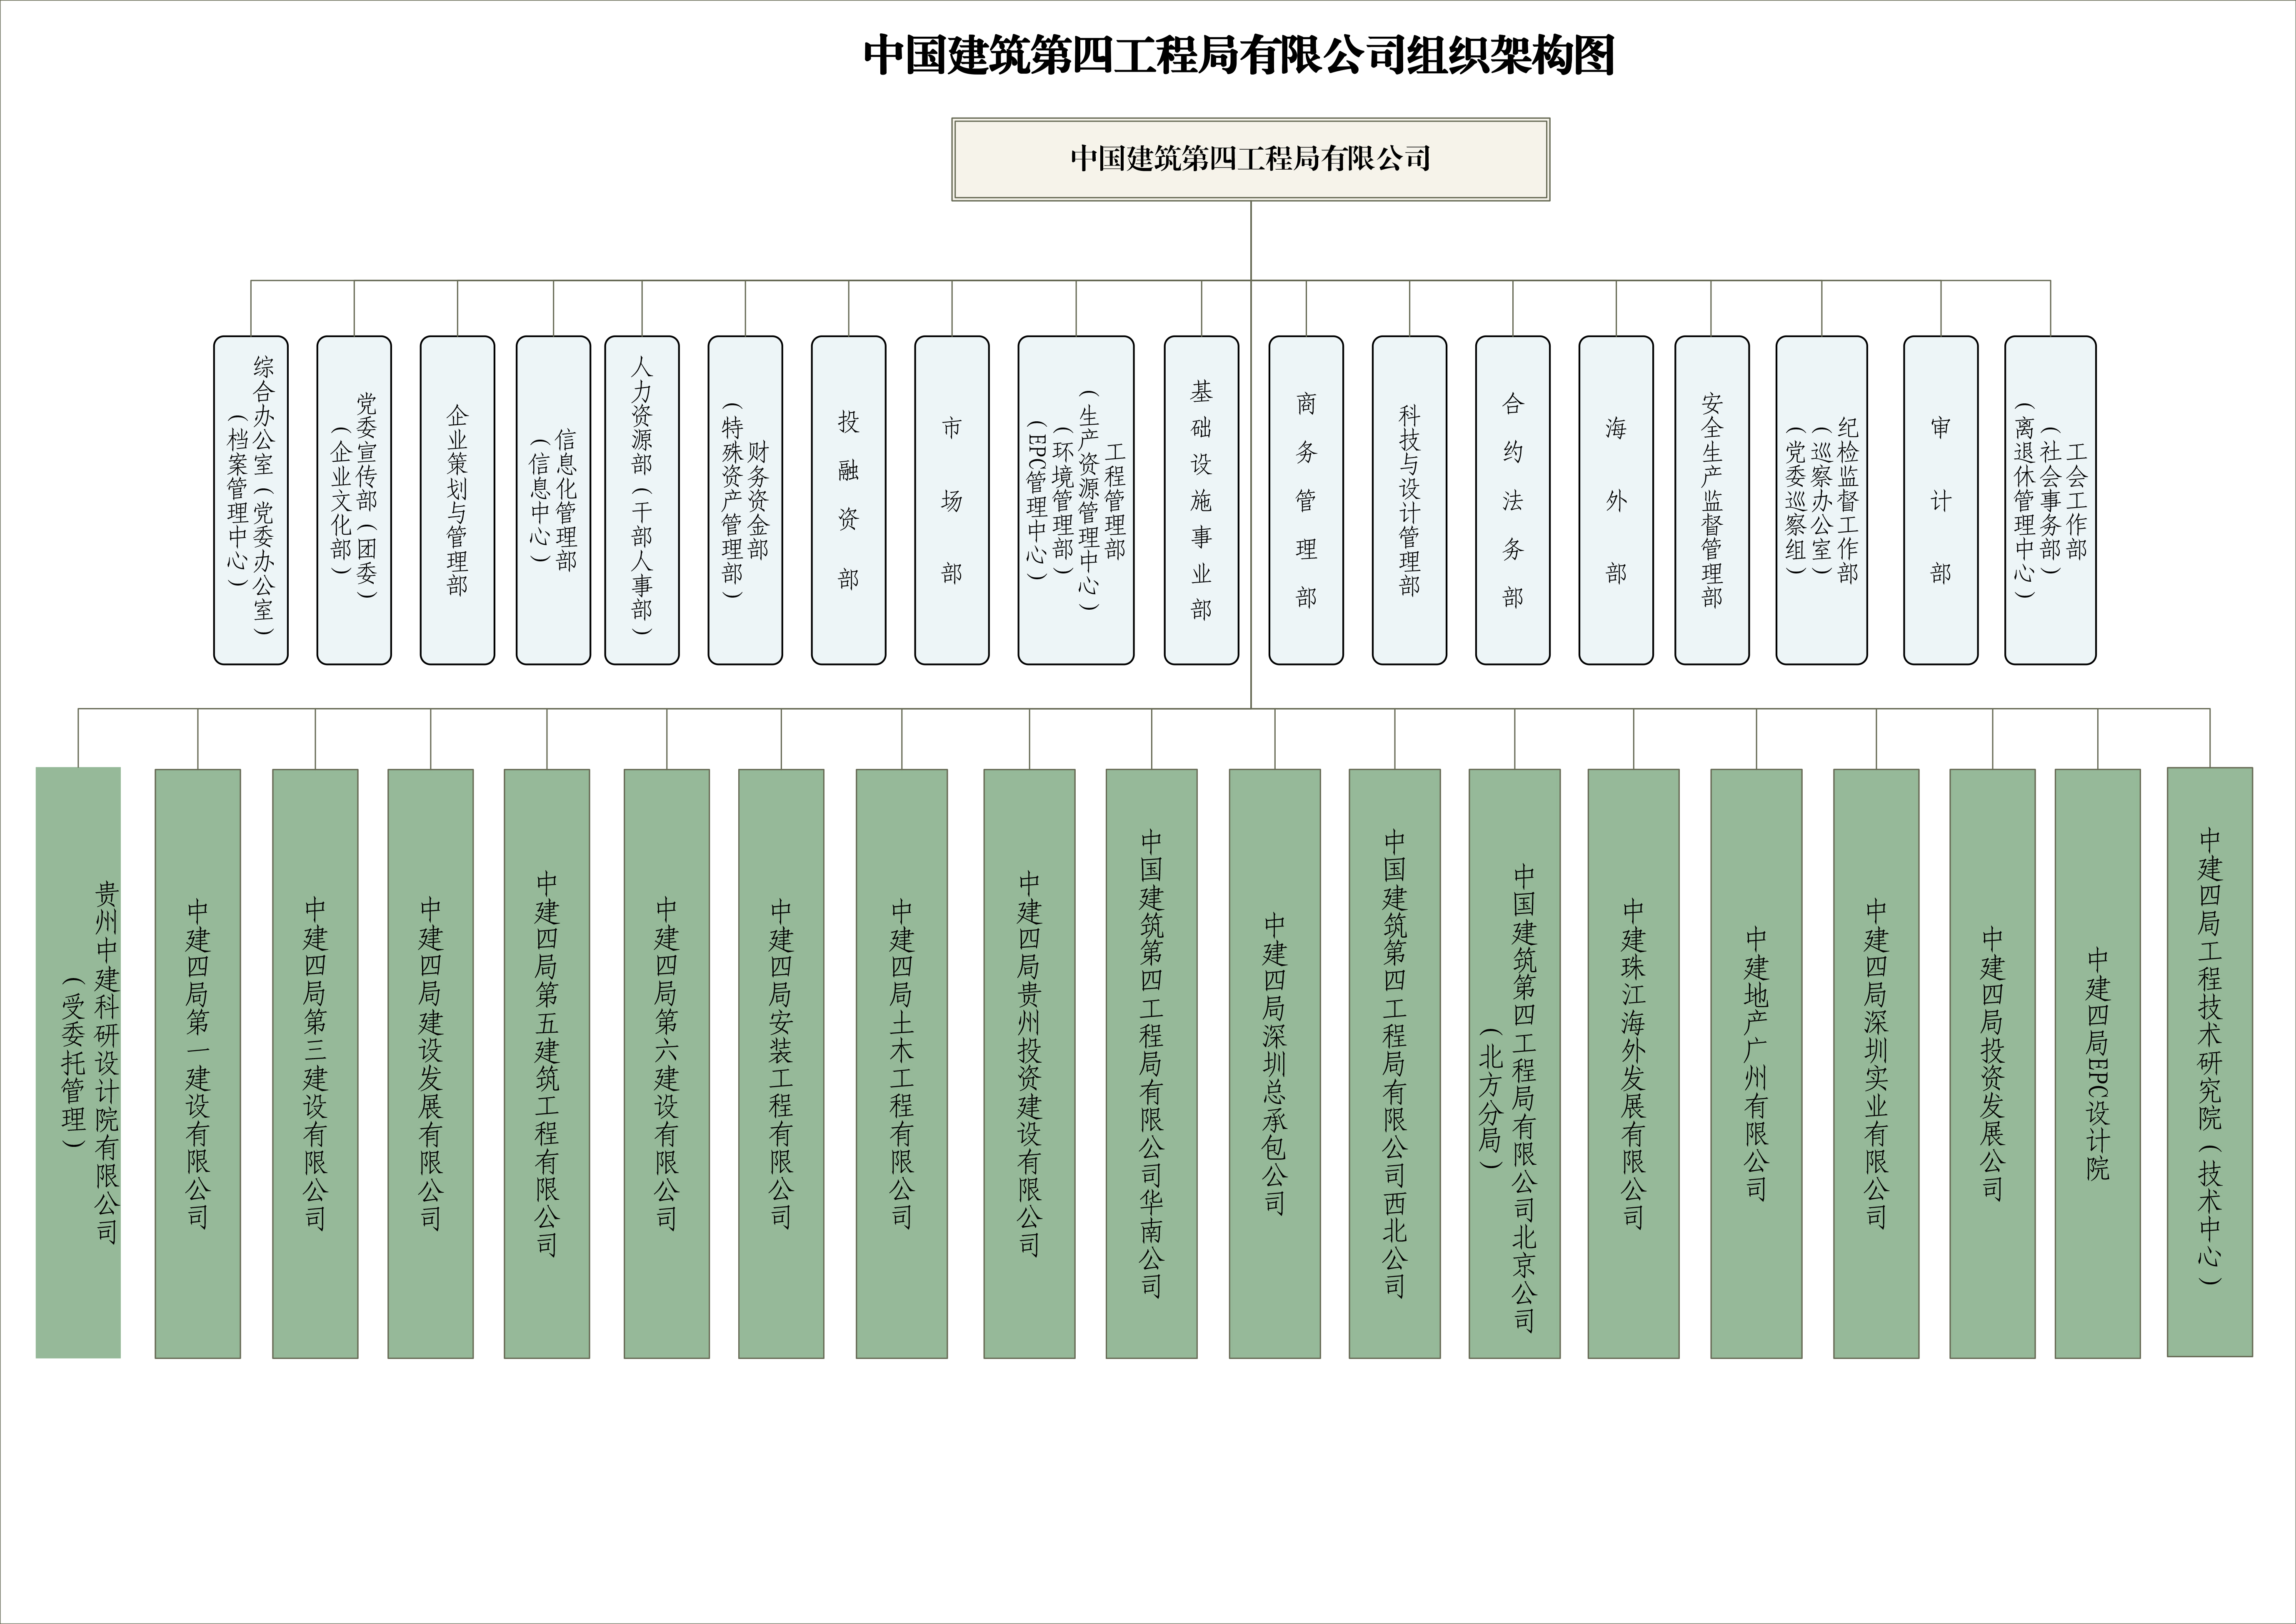 18个部门给宣传-中建四局组织架构图20211126(新-2).jpg